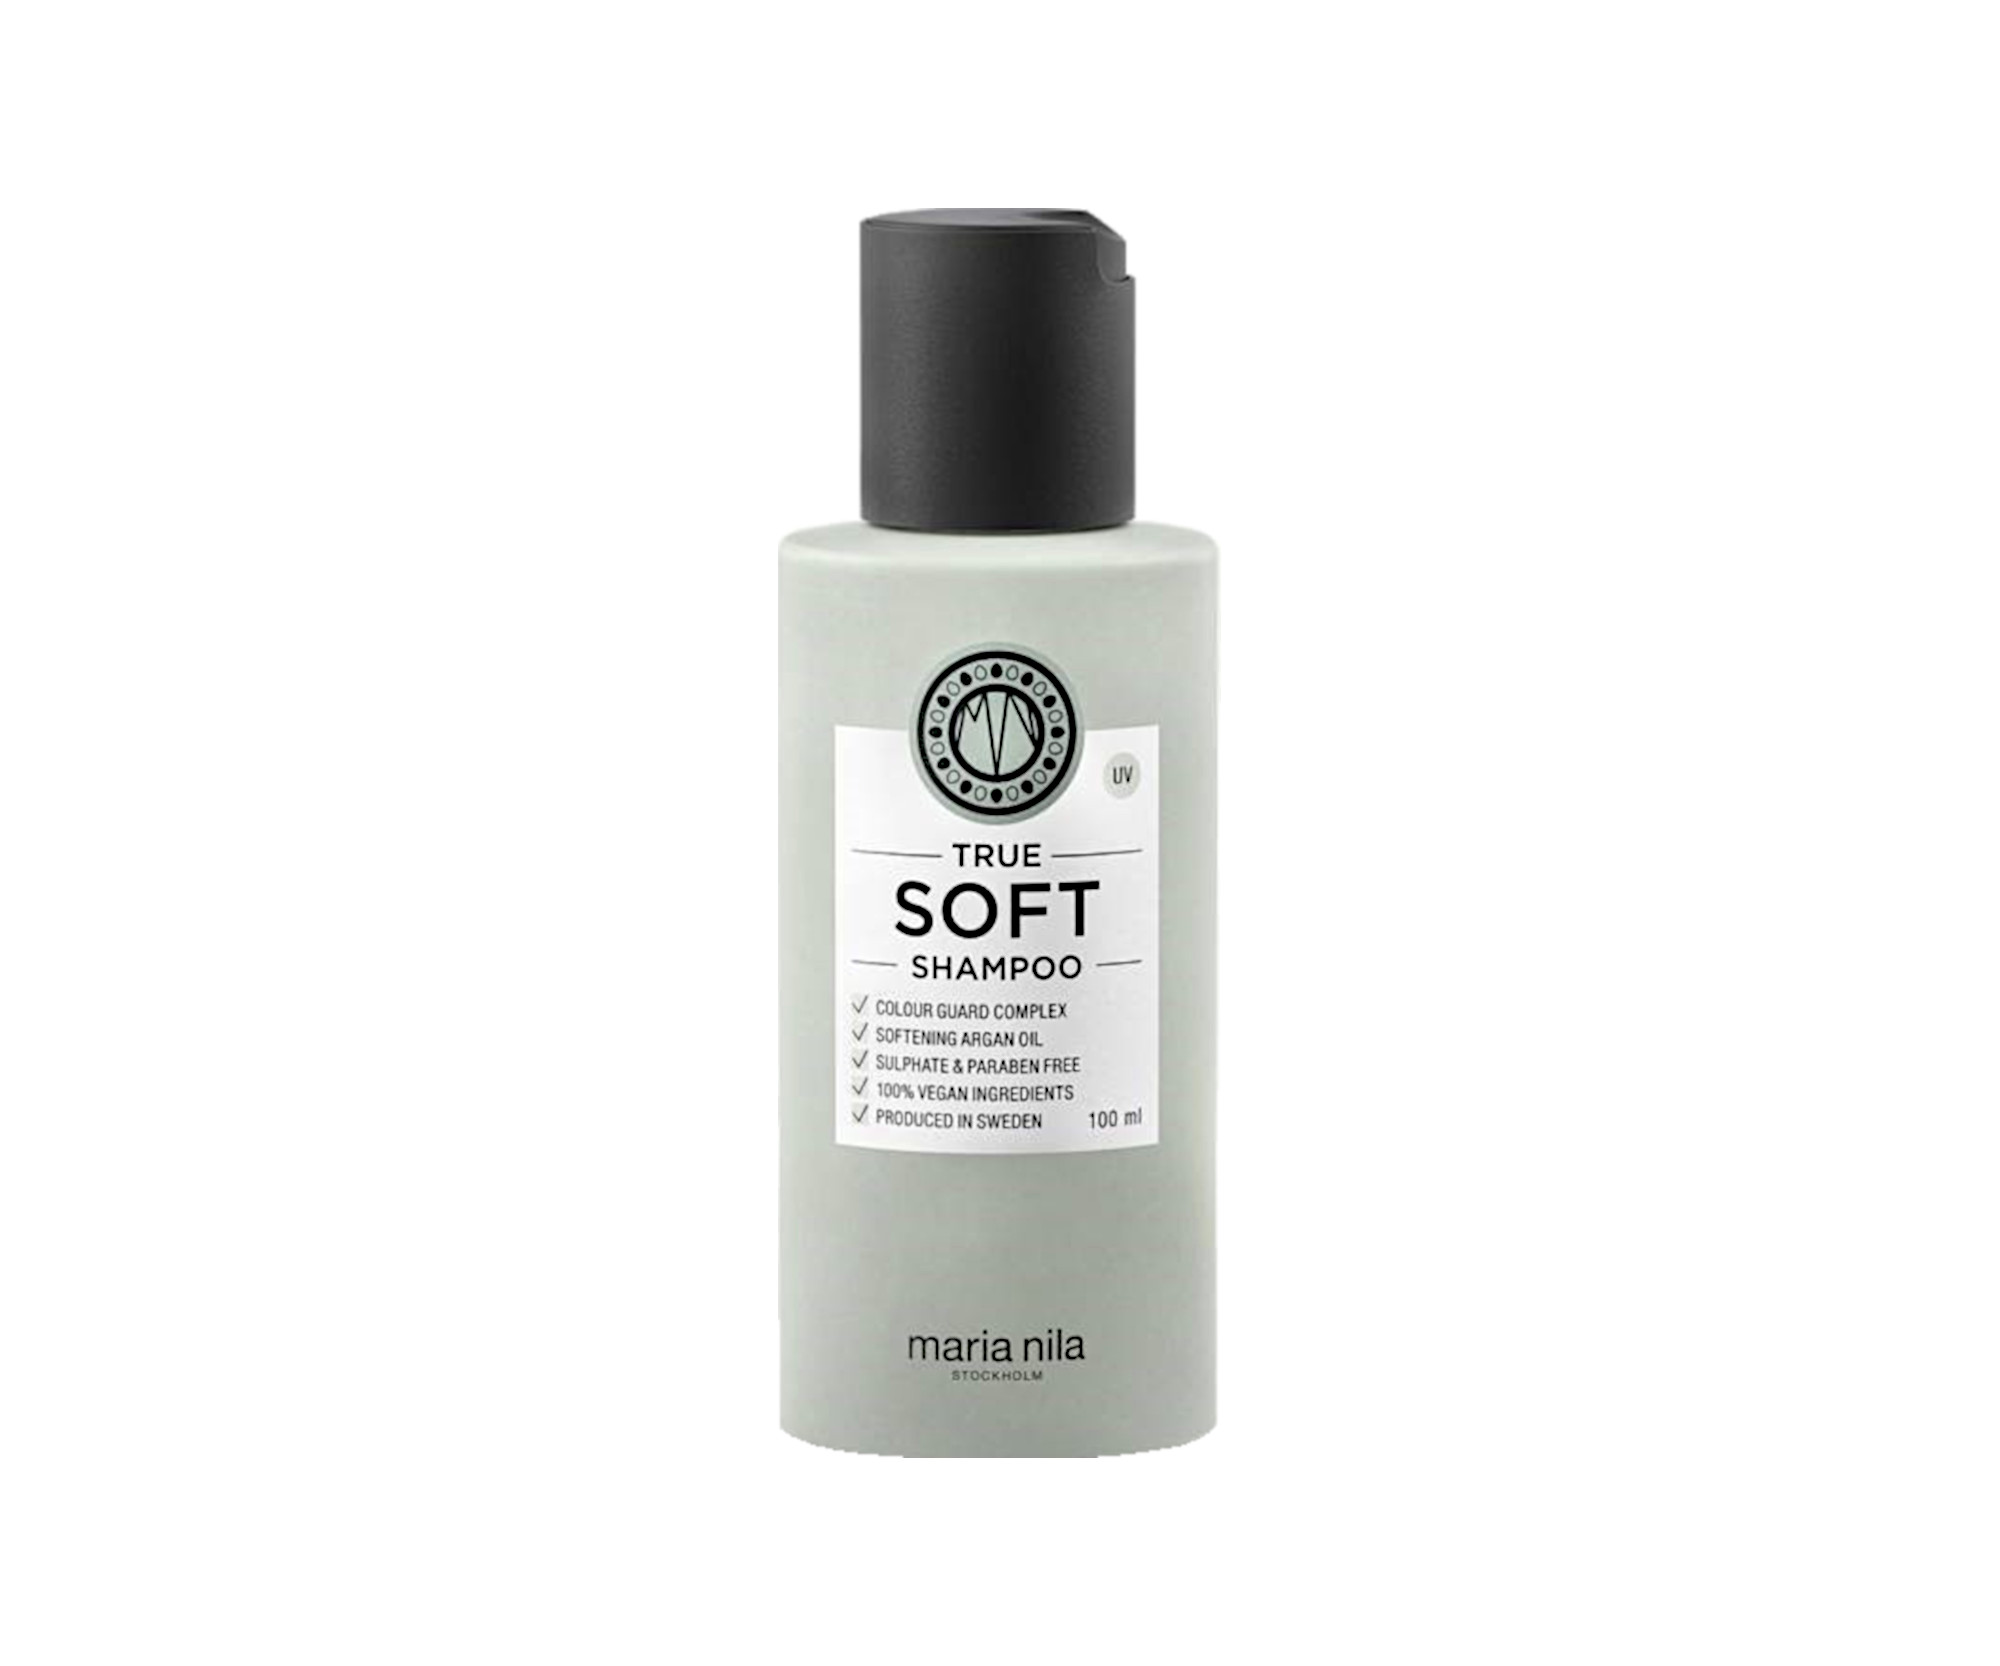 Hydratační šampon pro suché vlasy s arganovým olejem Maria Nila True Soft Shampoo - 100 ml (NF02-3635) + dárek zdarma